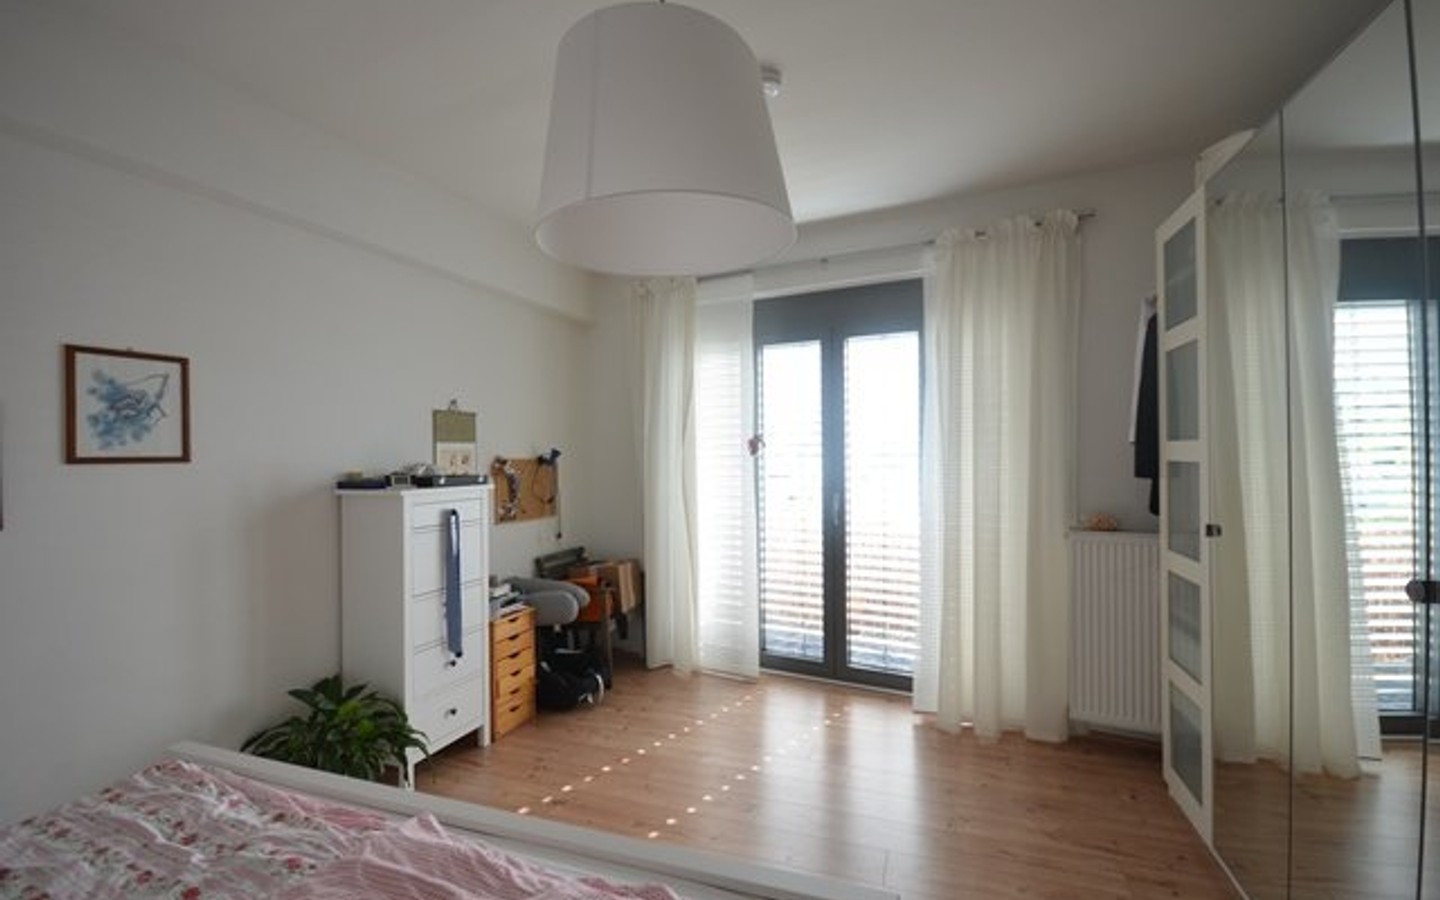 Schlafzimmer - Charmates Kleinod in HD - Handschuhsheim: moderne 2 Zimmermaisonettwohnung mit großer Dachterrasse